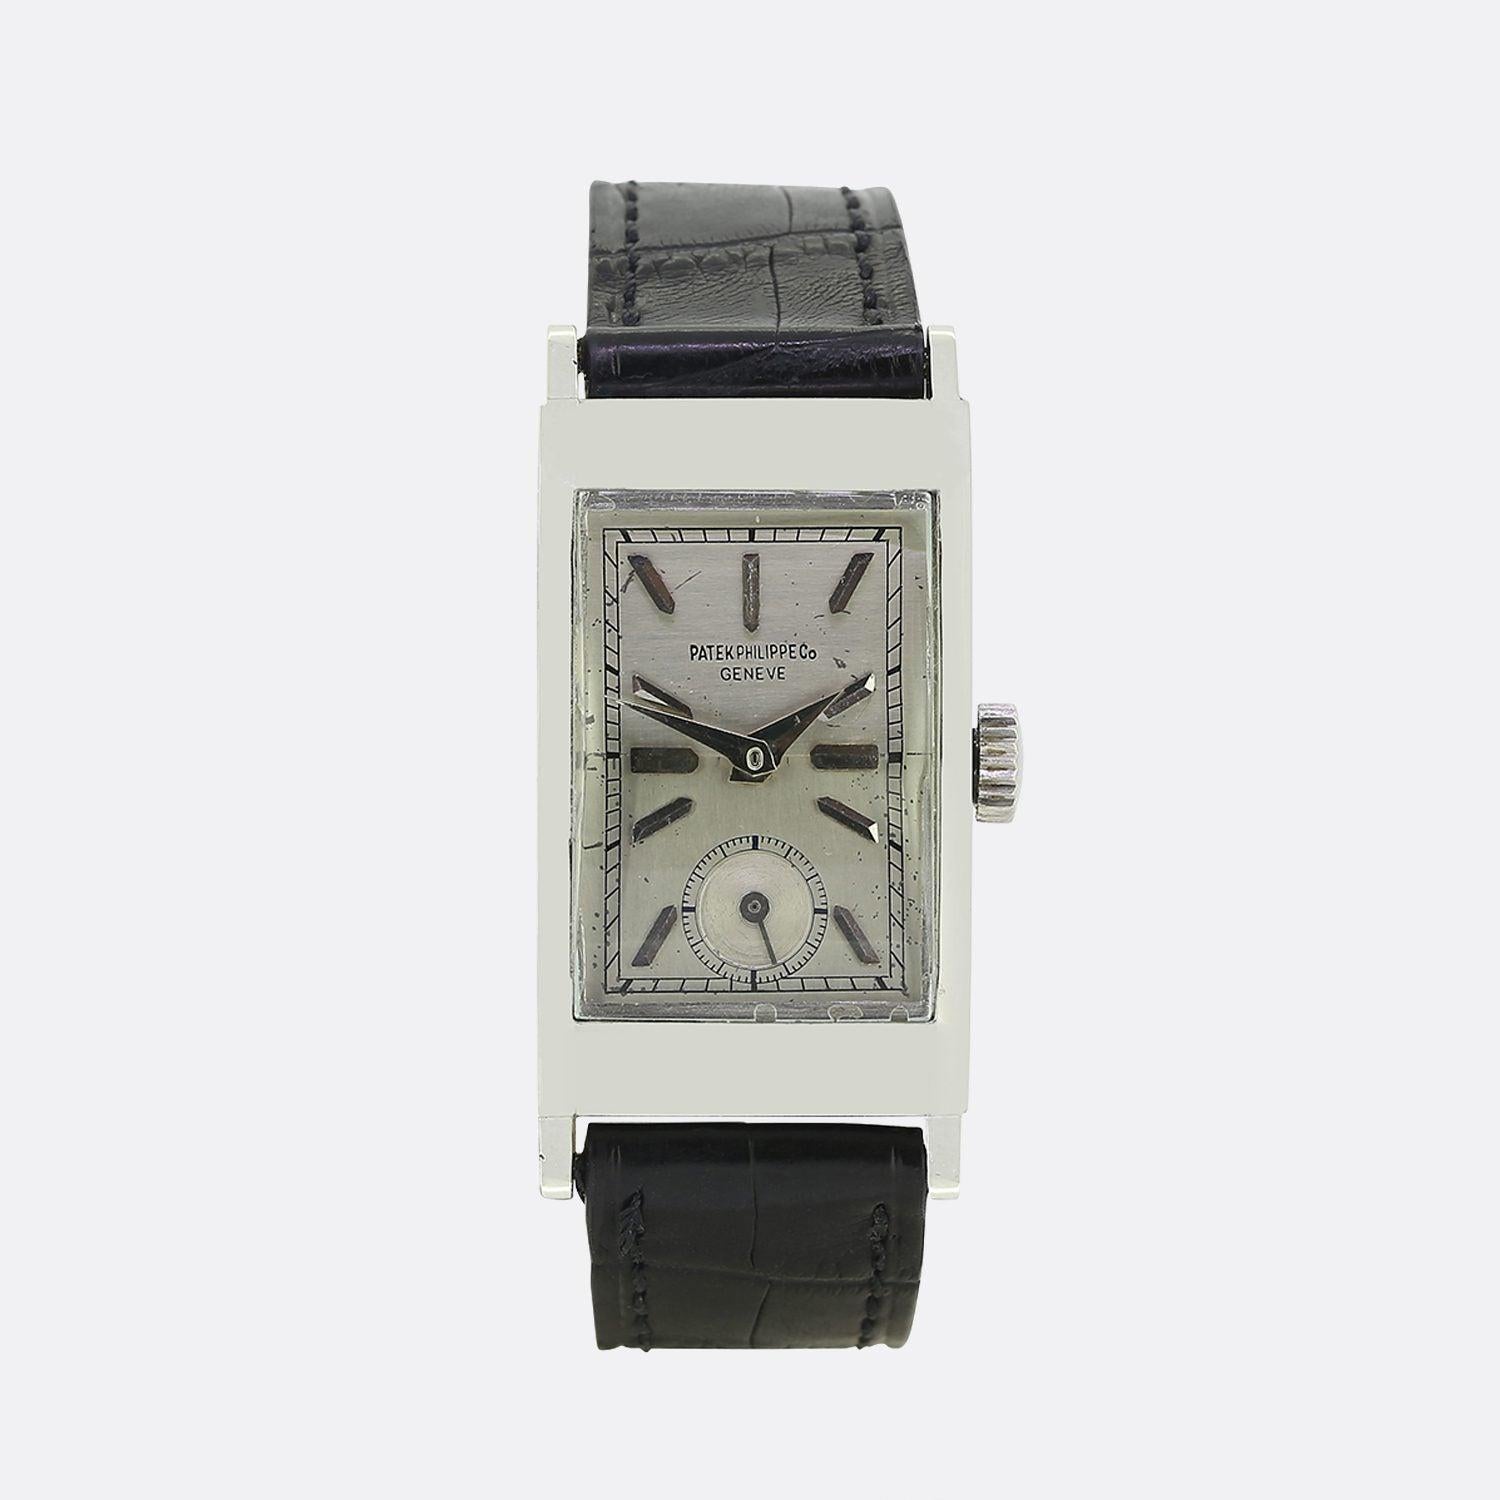 Dies ist eine wunderbare und seltene 1940er Jahre Herren Patek Philippe Armbanduhr. Die Uhr verfügt über ein silbernes Zifferblatt mit weißen Stunden- und Minutenzeigern und einem Sekundenzifferblatt bei 6 Uhr. Die Uhr wurde mit einem neuen